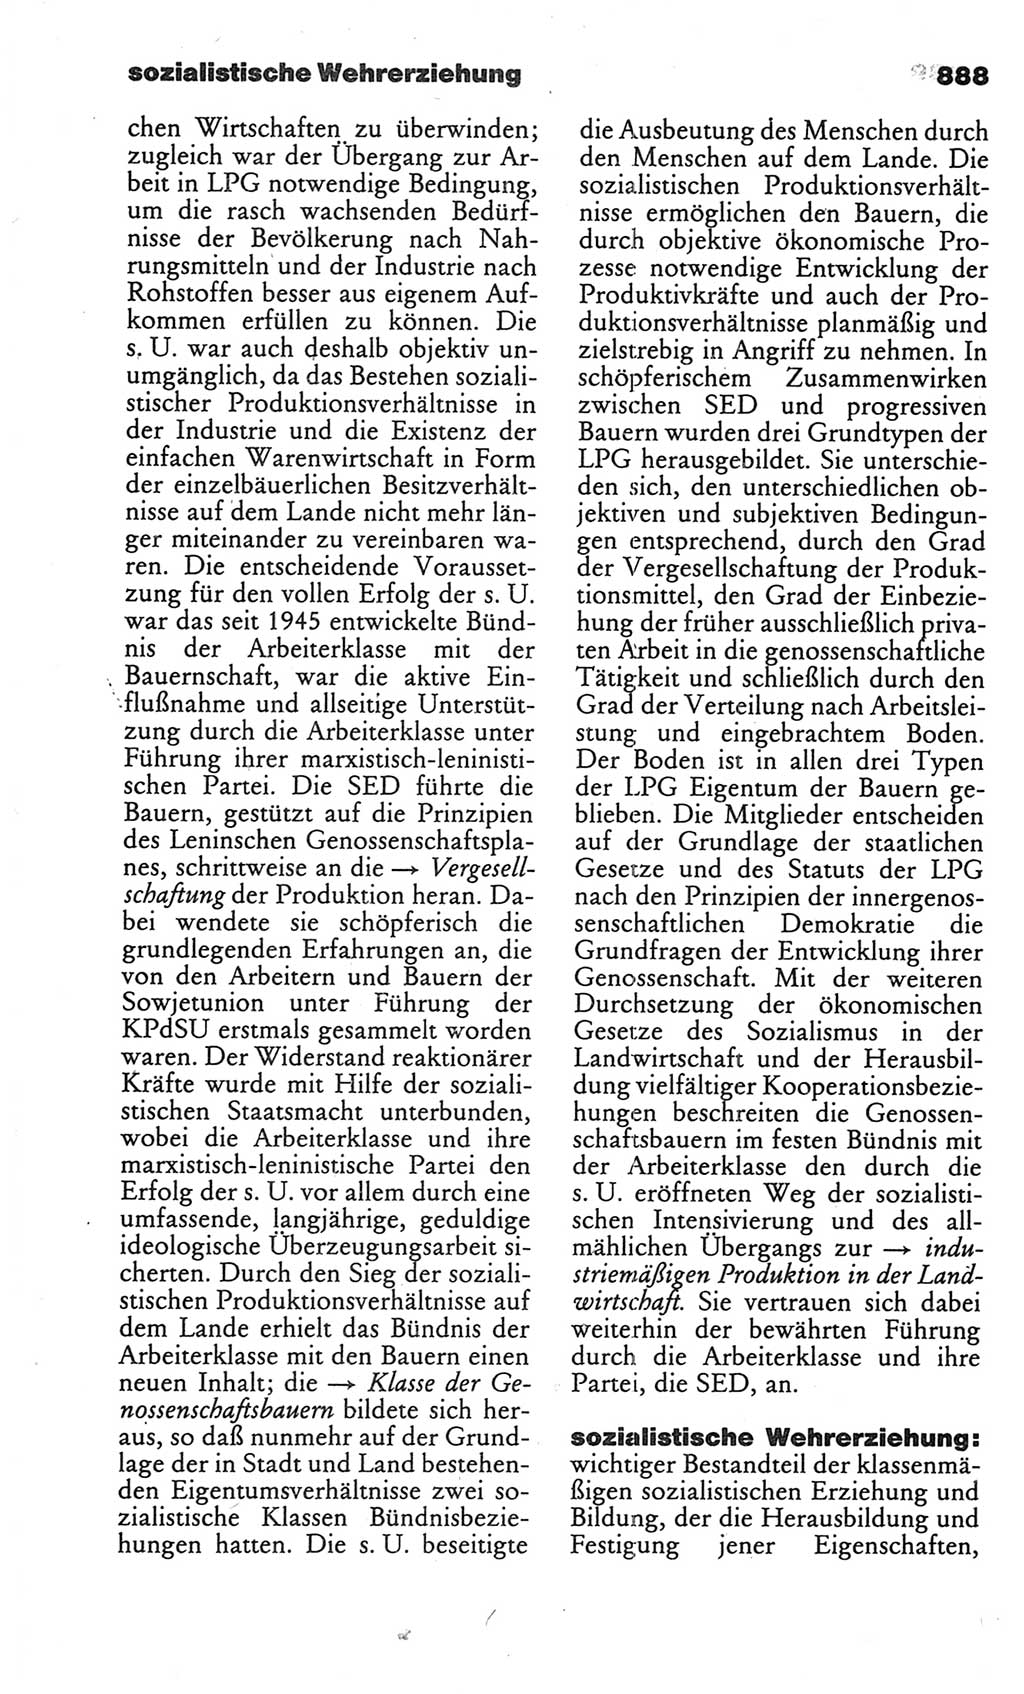 Kleines politisches Wörterbuch [Deutsche Demokratische Republik (DDR)] 1986, Seite 888 (Kl. pol. Wb. DDR 1986, S. 888)